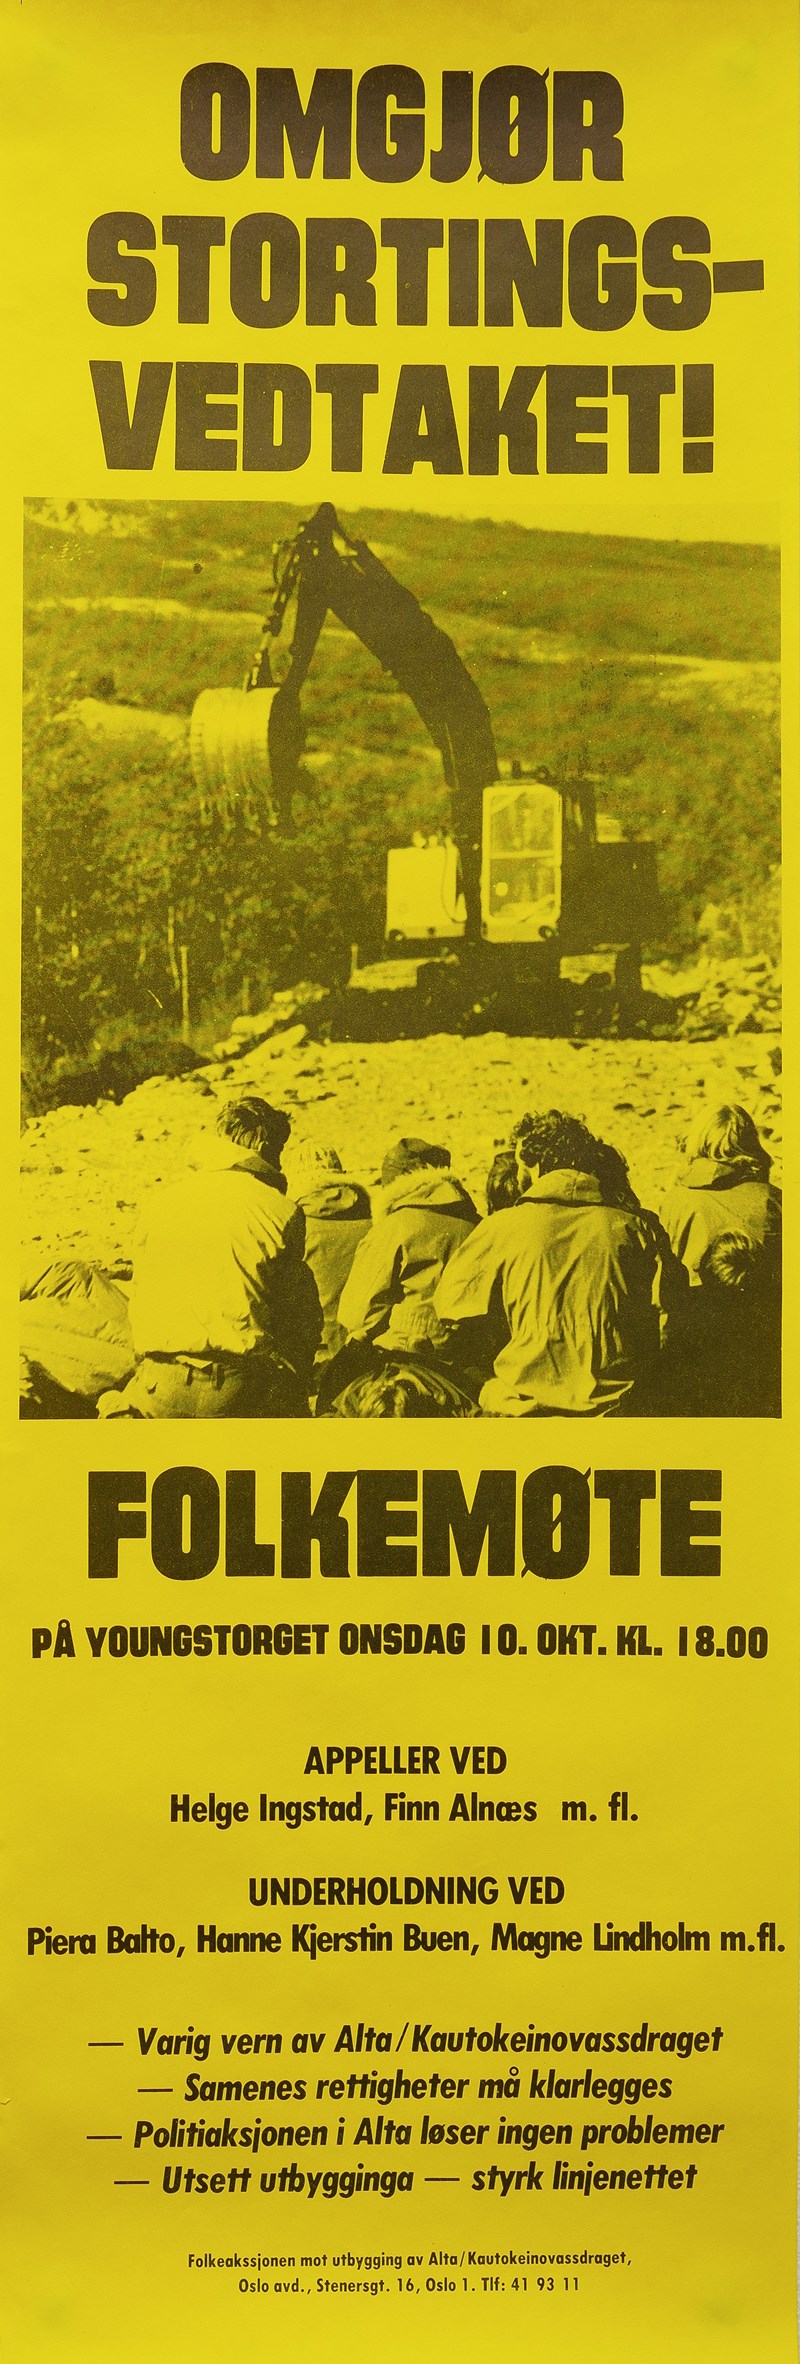 Plakat om folkemøte på Youngstorget: "Omgjør stortingsvedtaket"